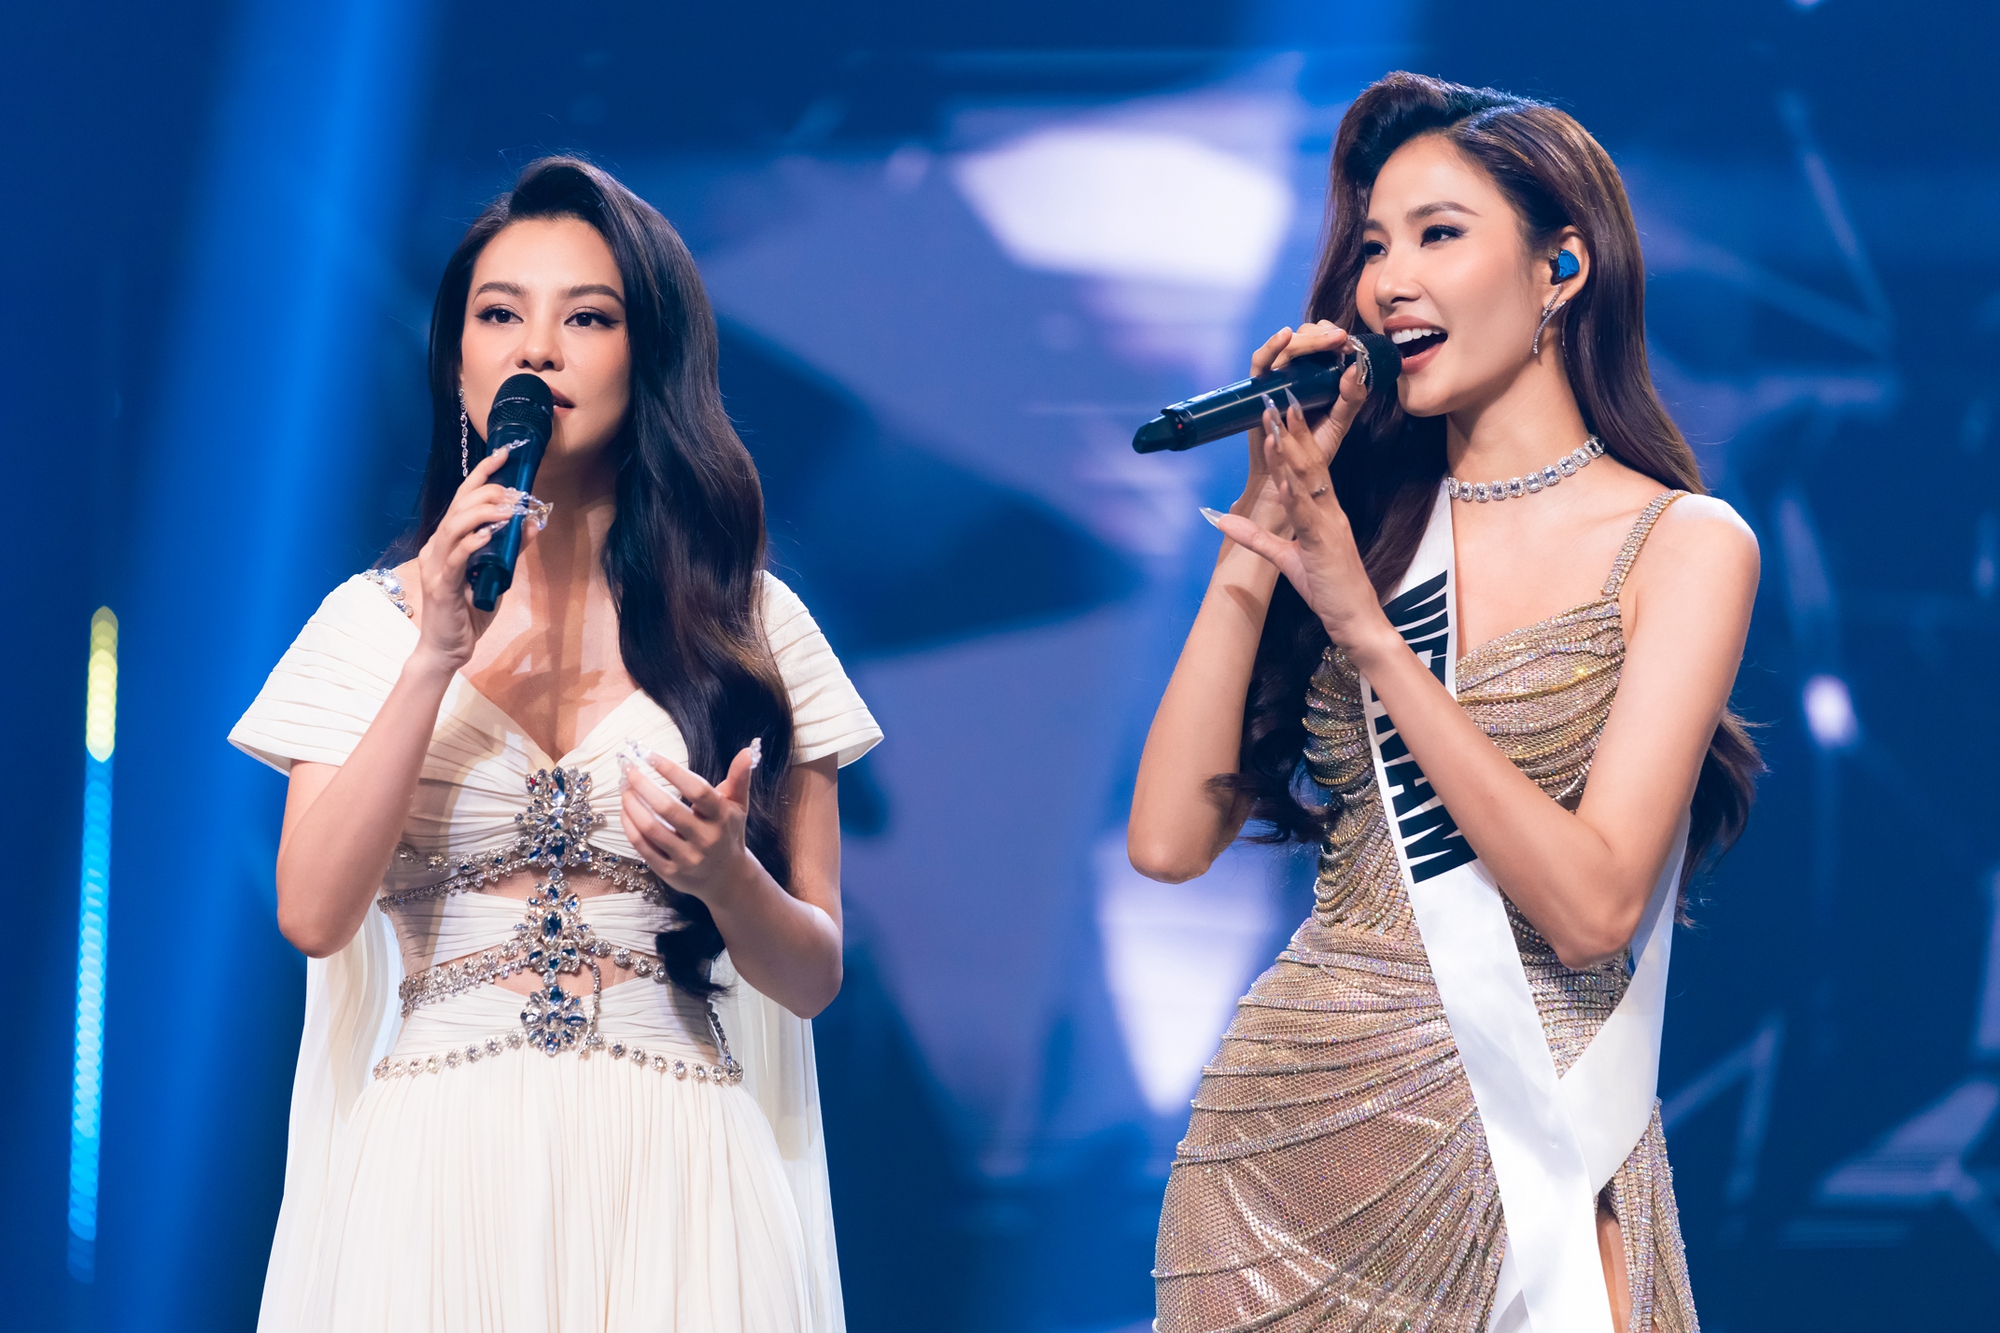 Hoàng Thùy tái hiện sân khấu Miss Universe 2019 tại Trời sinh một cặp - Ảnh 4.